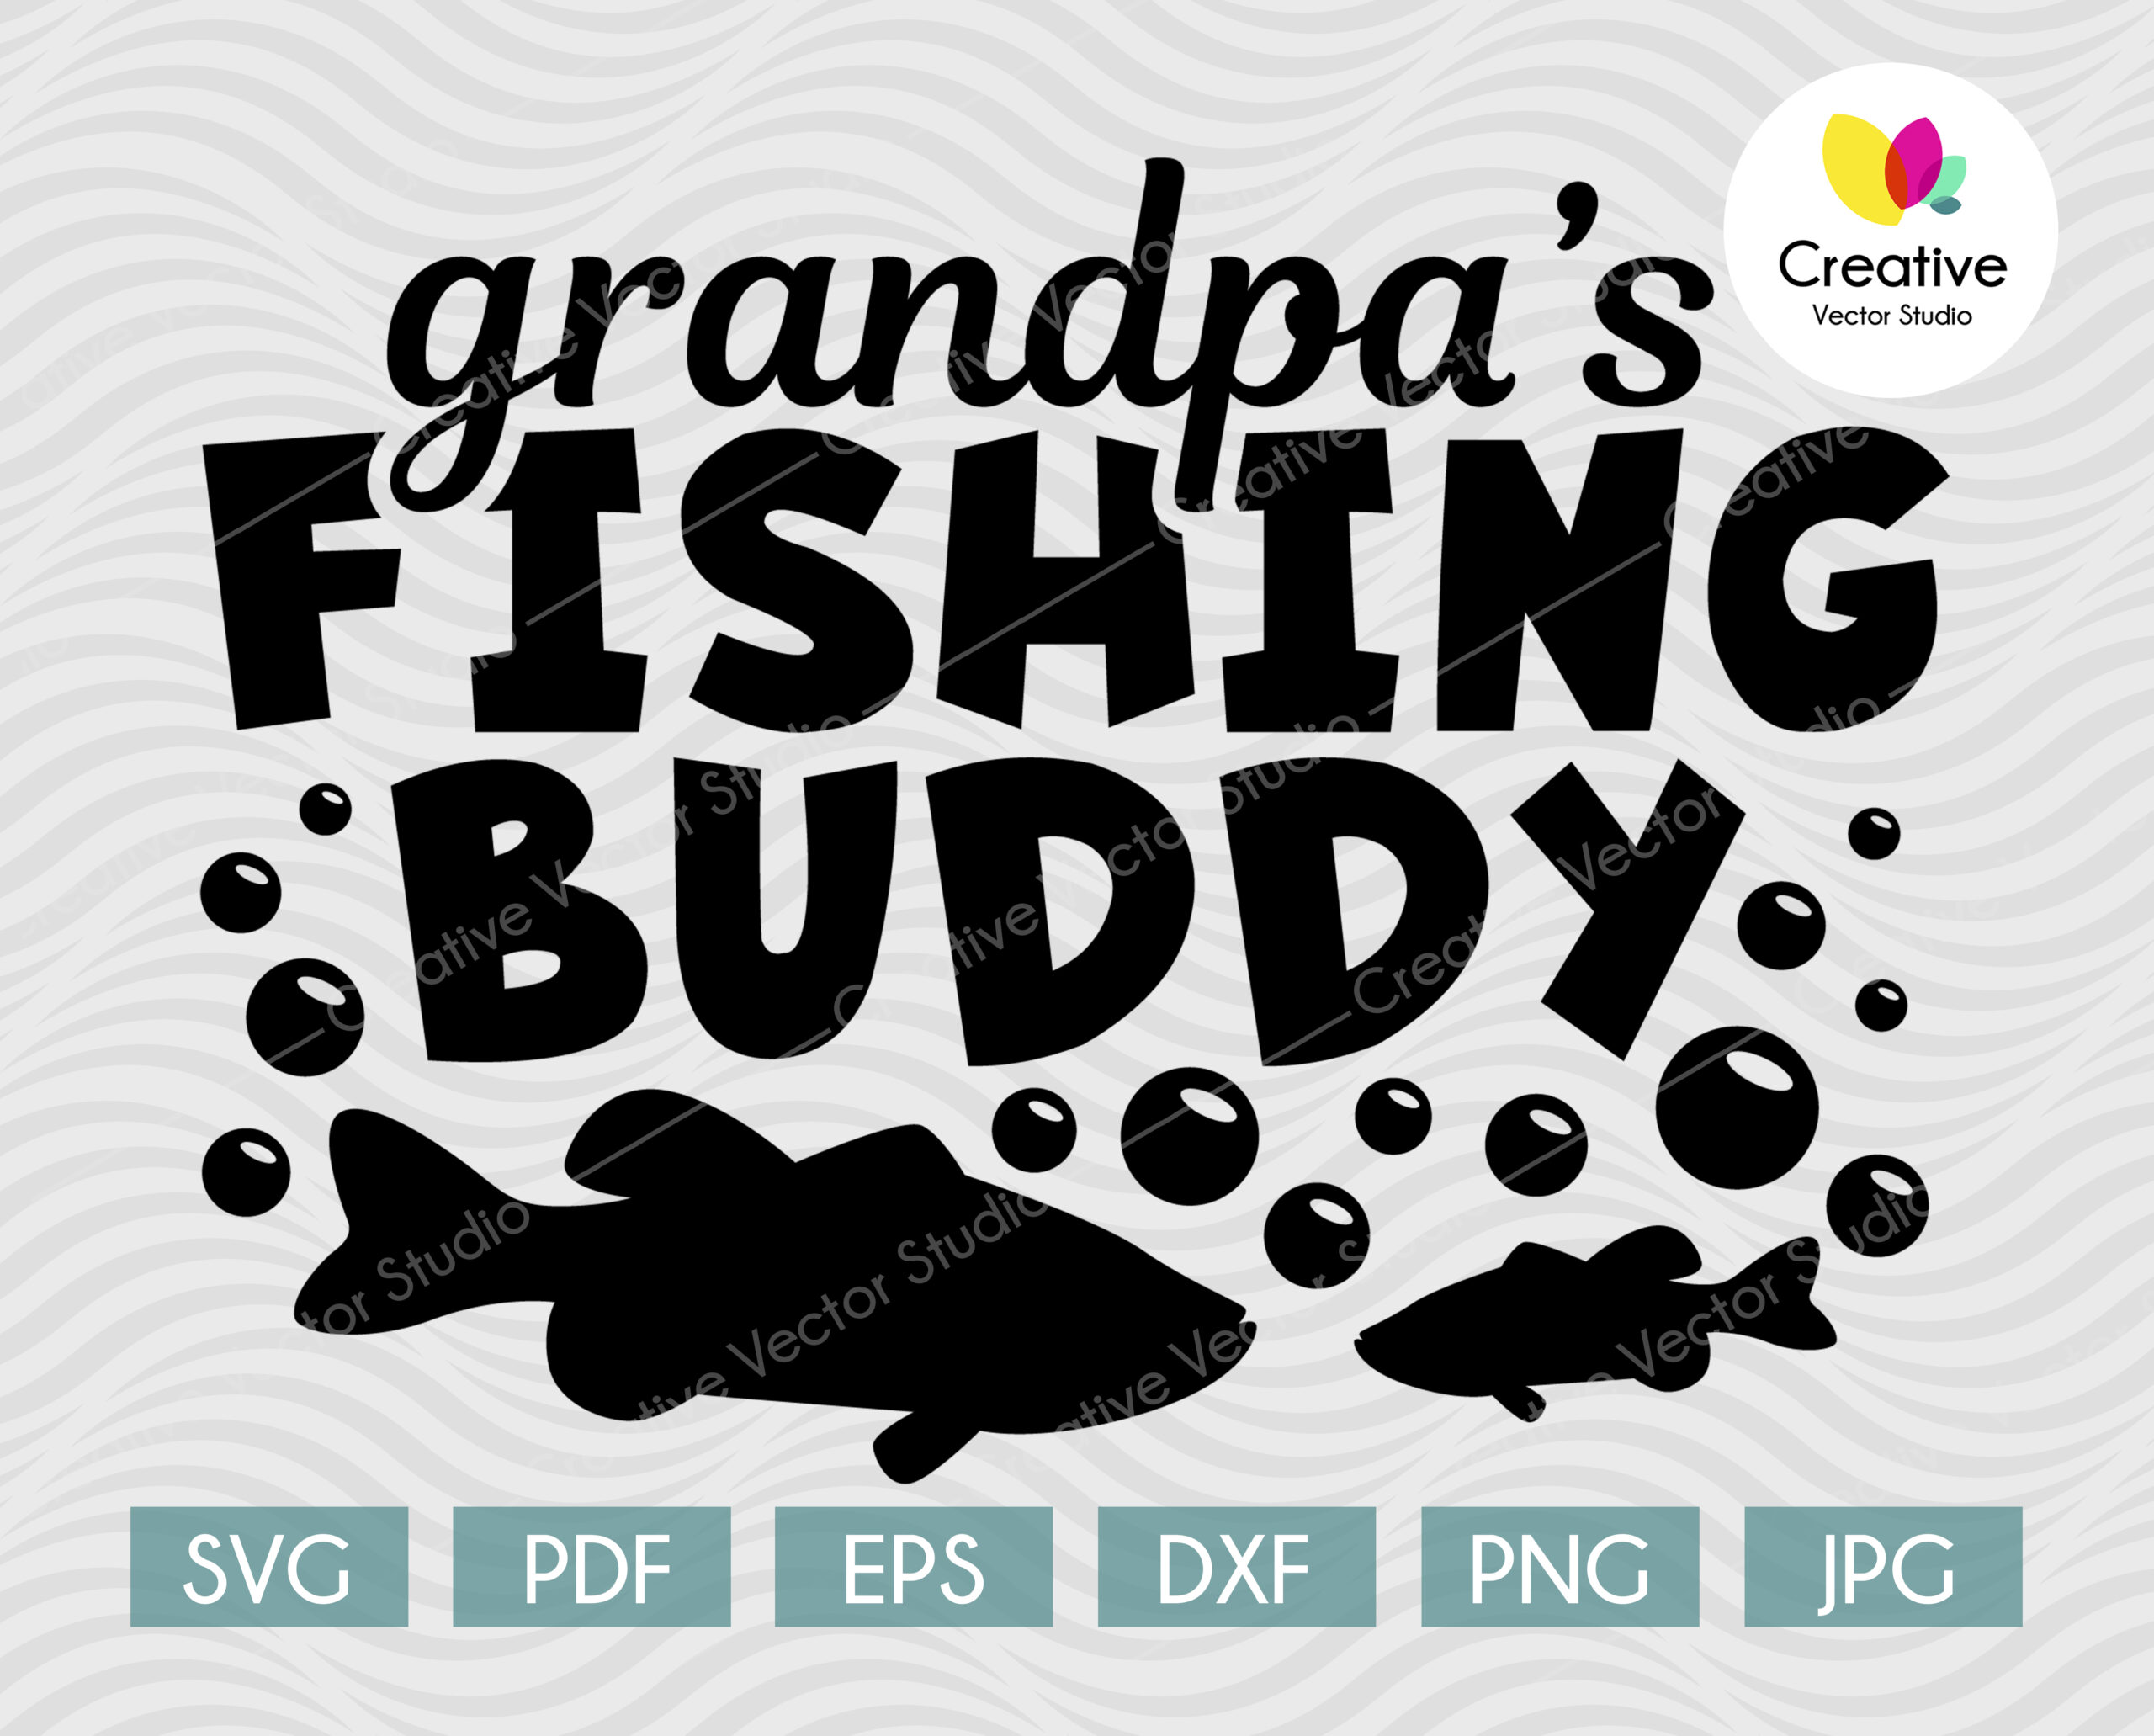 Grandpa's Fishing Buddy SVG